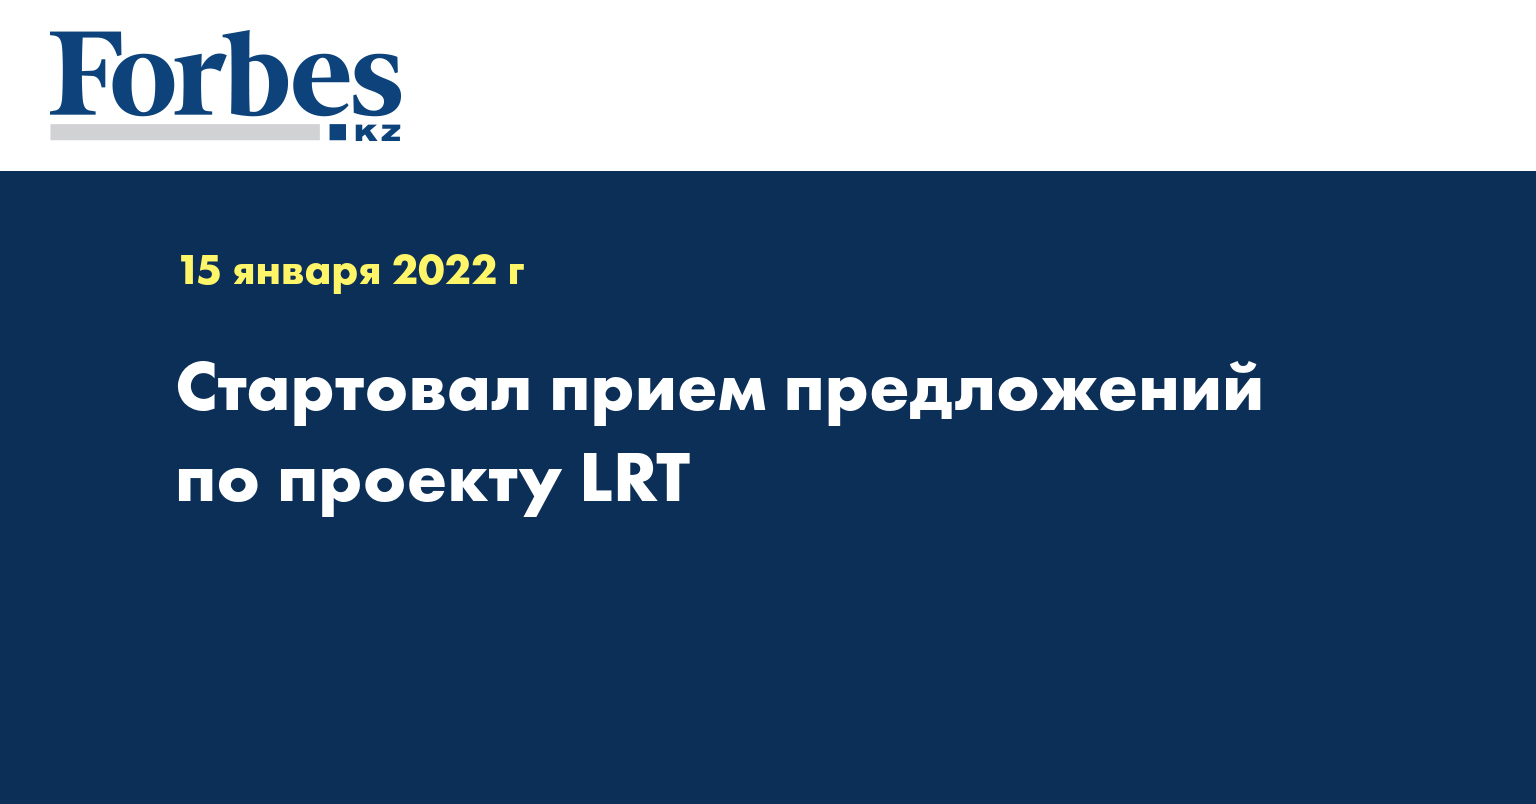 Стартовал прием предложений по проекту LRT